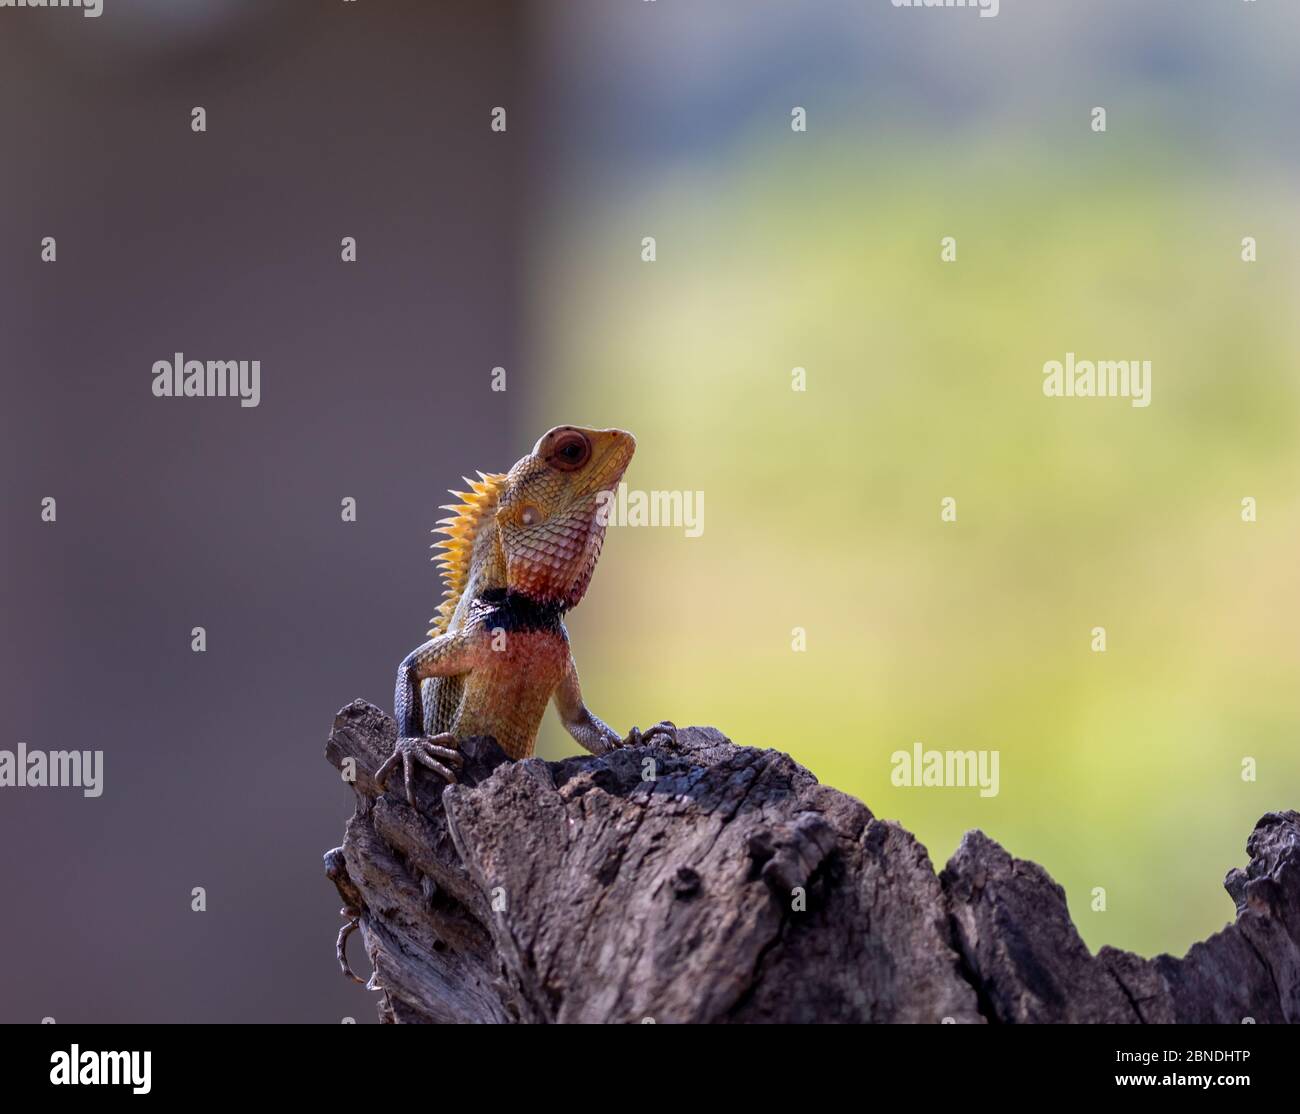 Alert bunten orange und blau Crested Leguane im Profil mit Kopf vor einem unscharfen Hintergrund im Freien mit Kopierraum angehoben Stockfoto